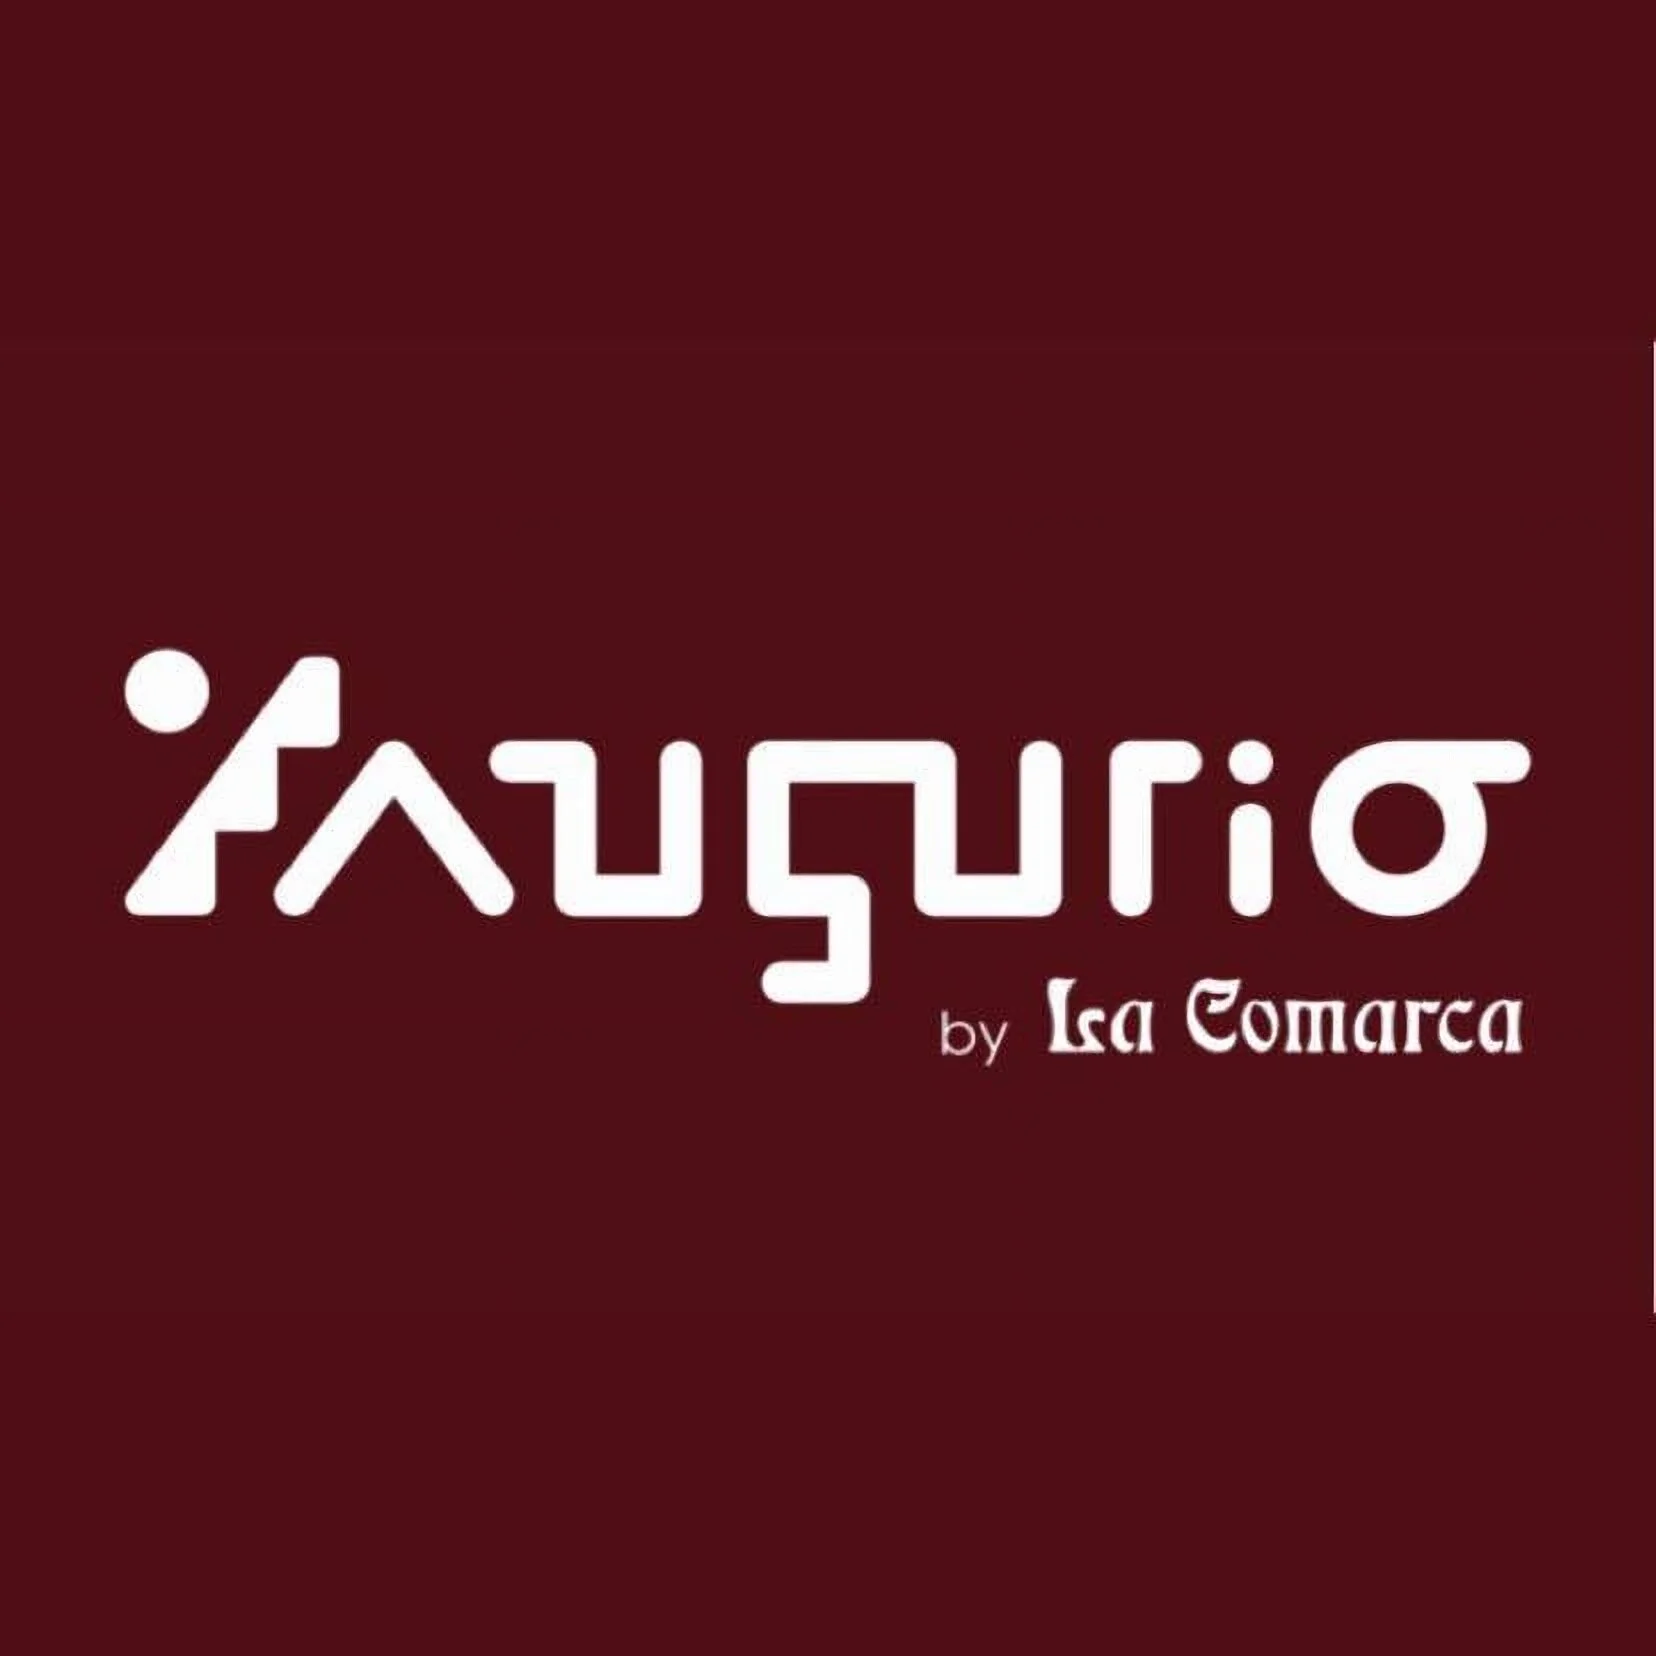 Augurio By La Comarca-6810